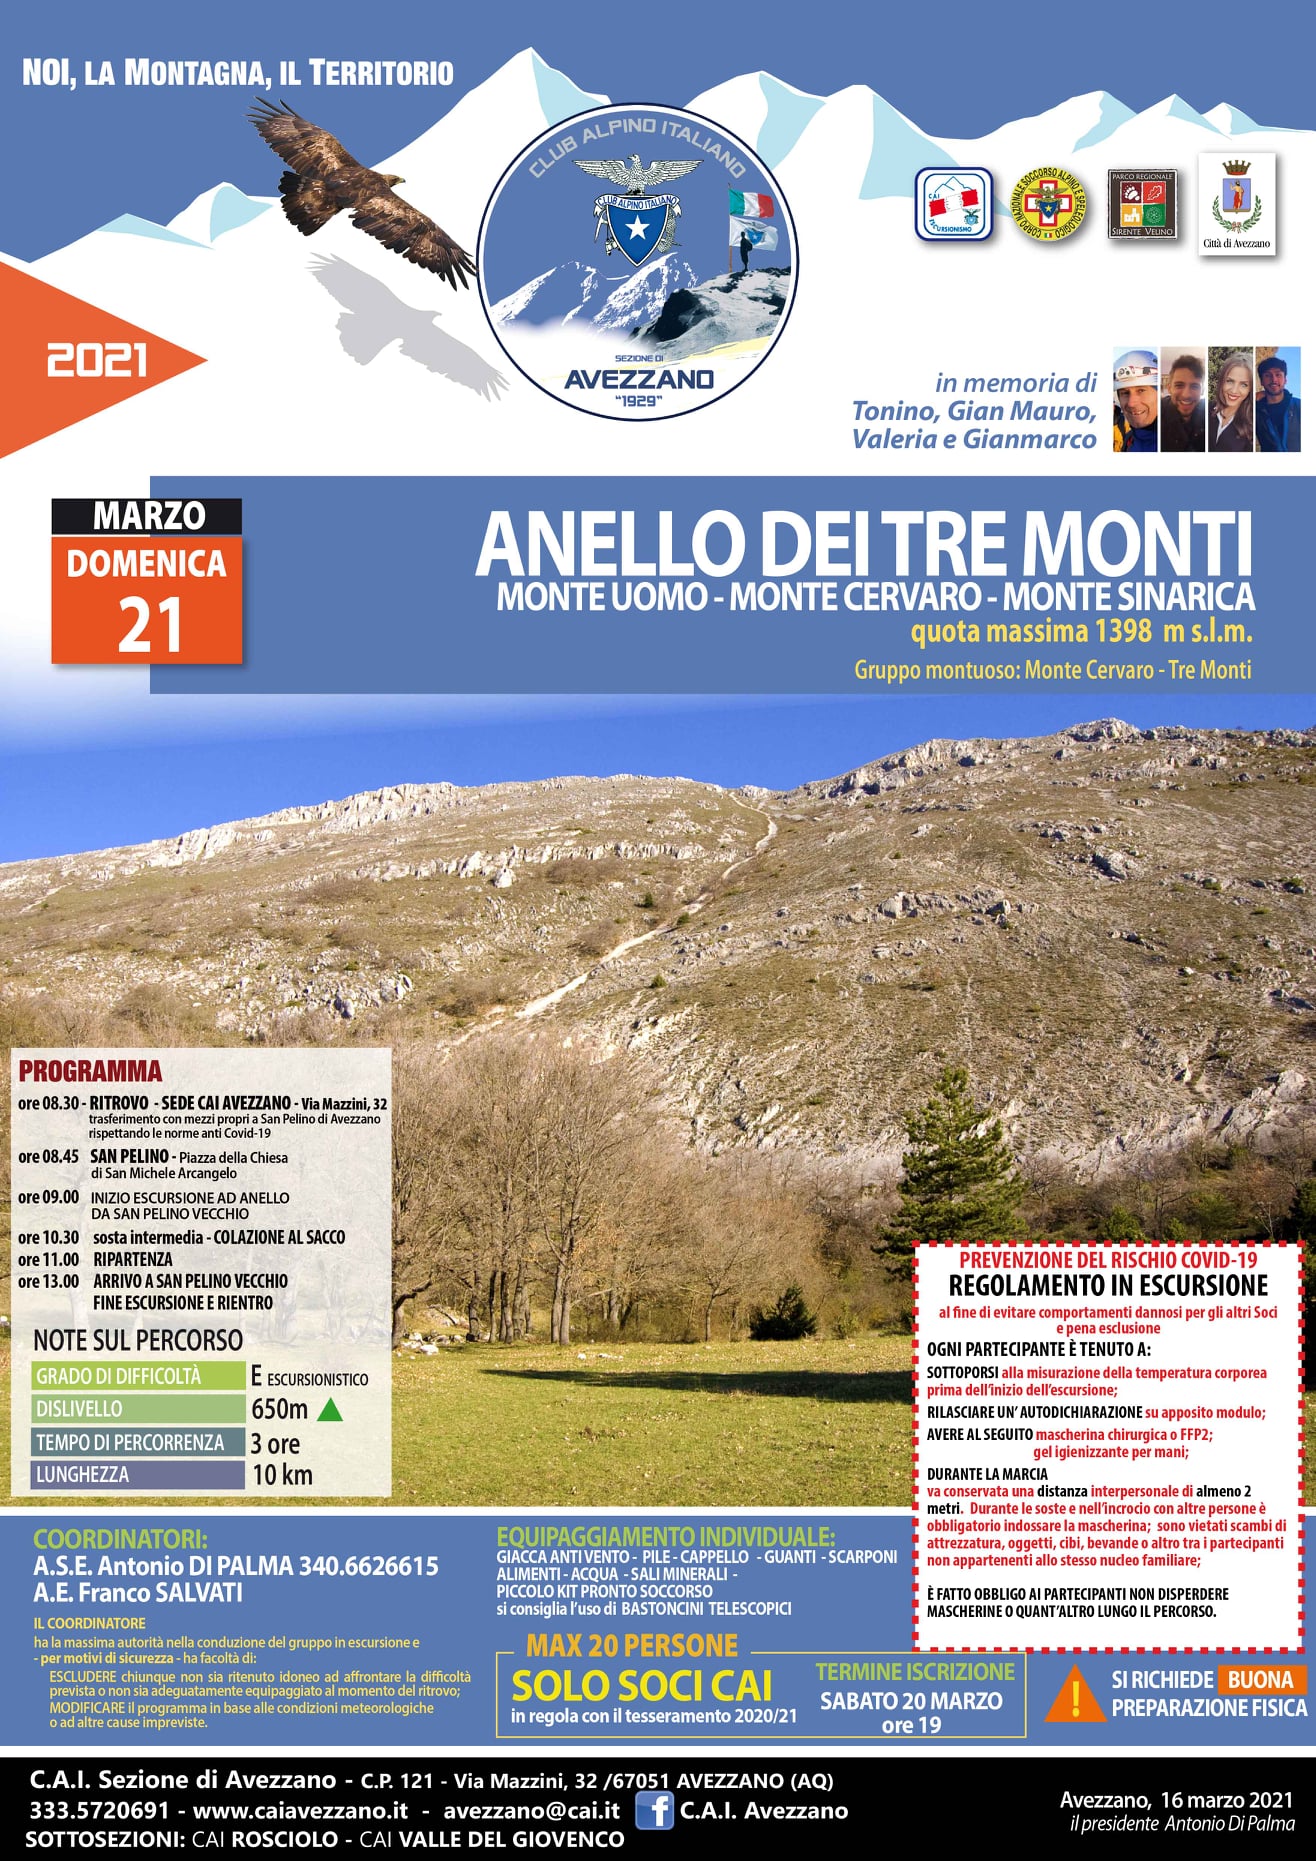 C.A.I. di Avezzano: annullata l’escursione “Monte Marine-Pizzoli”, al suo posto l'escursione “Anello dei tre monti”